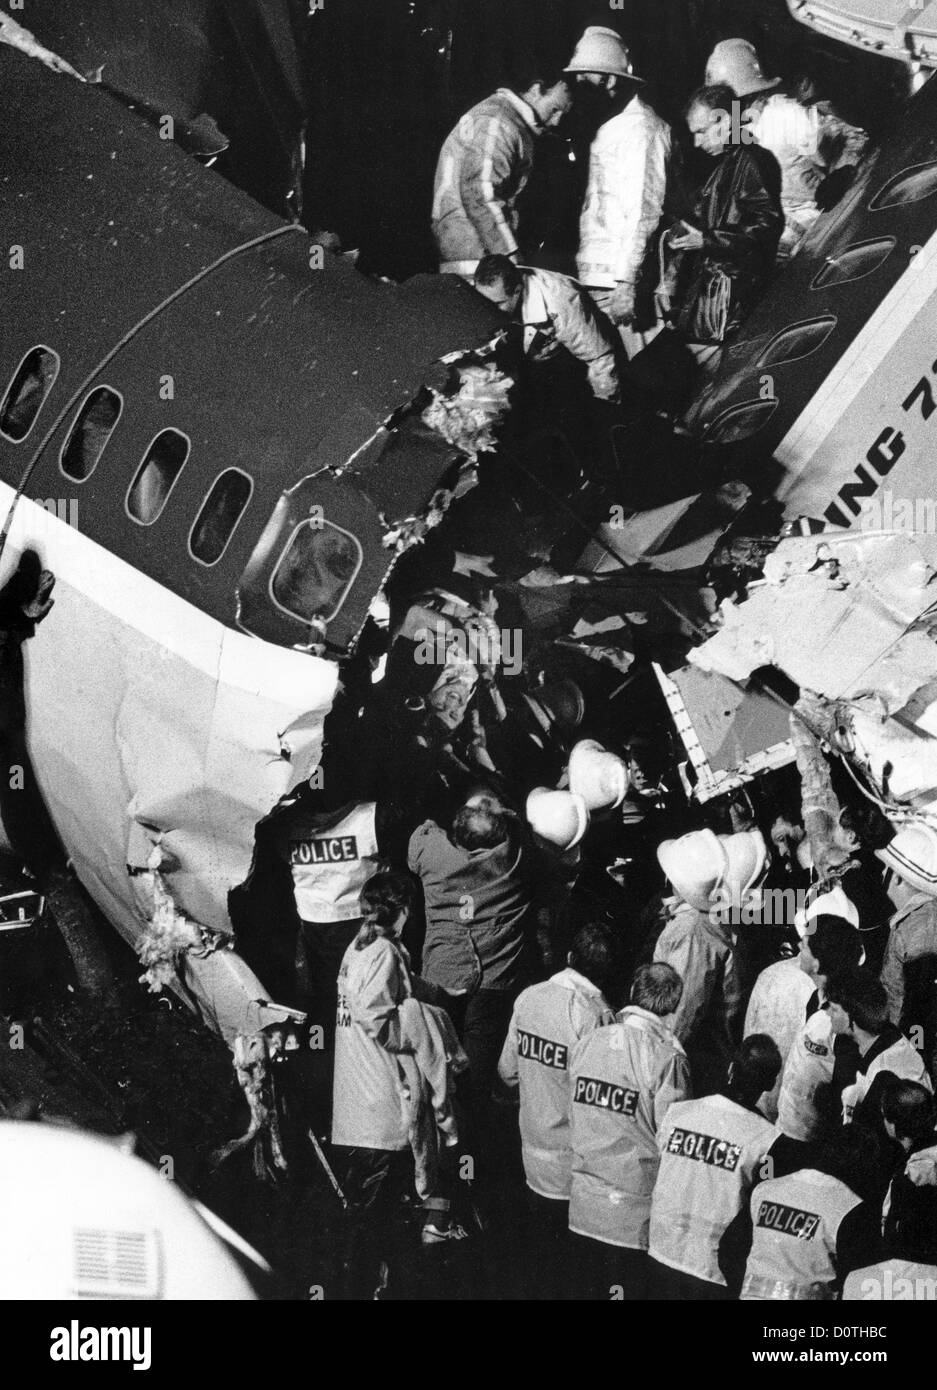 Kegworth Air Disaster 1989 nachts wird ein Mann aus den Trümmern gerettet. Flugzeugabsturz-Tragödie Großbritannien 1980er Jahre Bild von DAVID BAGNALL Stockfoto